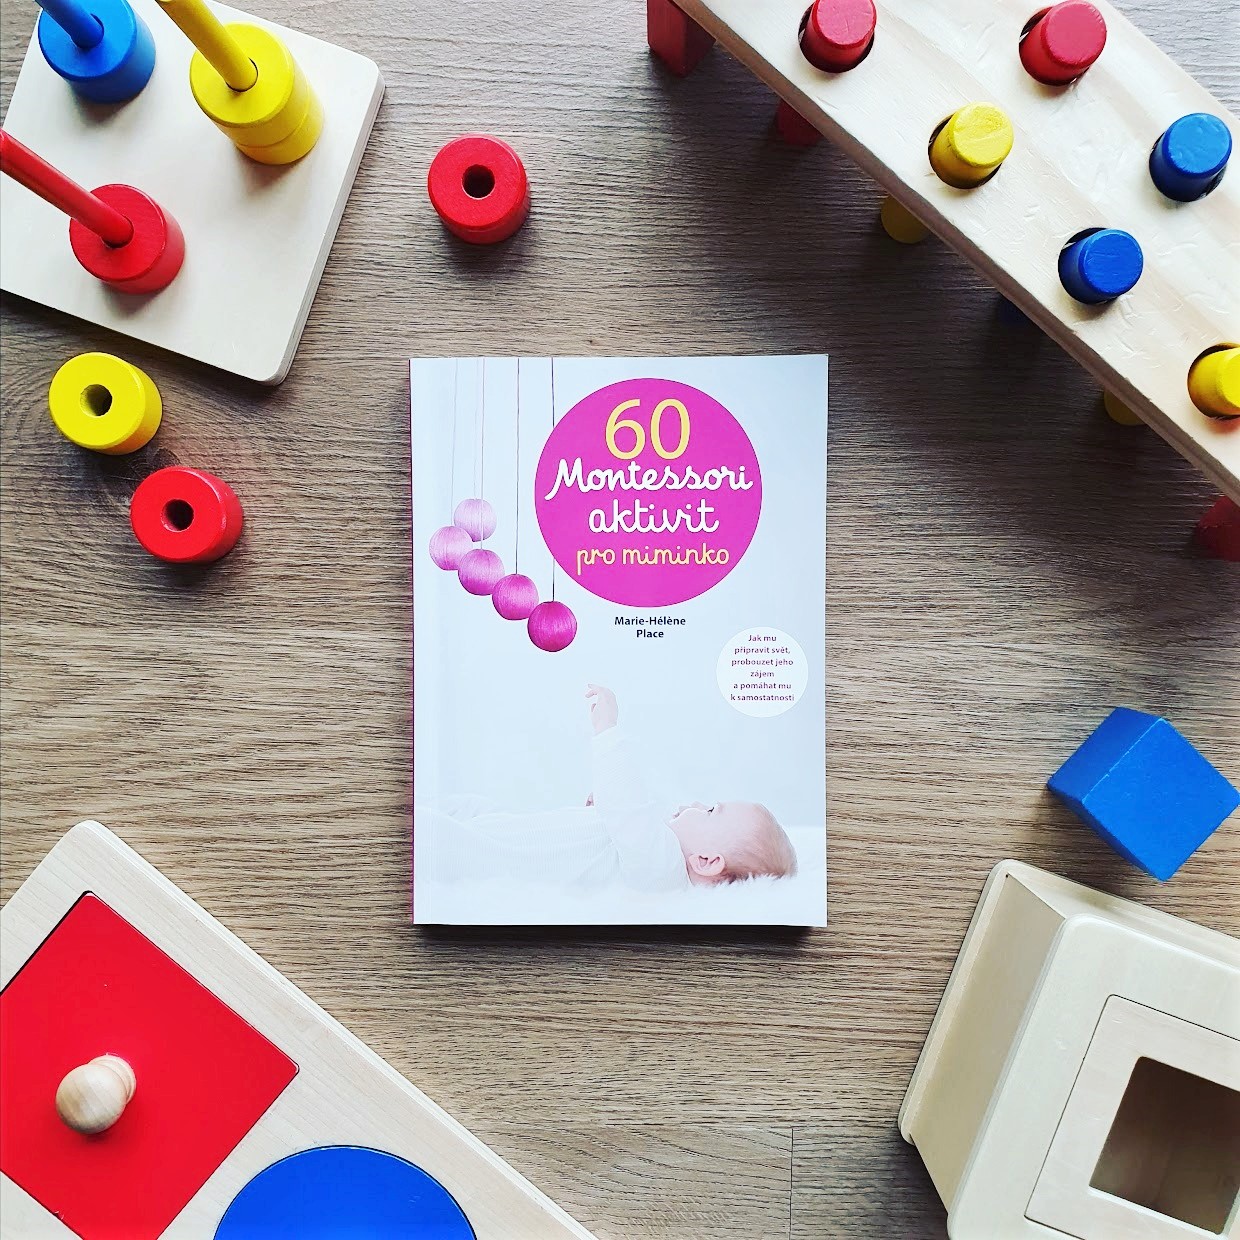 60 Montessori aktivit pro miminko (60 activités Montessori pour mon bébé) - Marie-Hélène Place